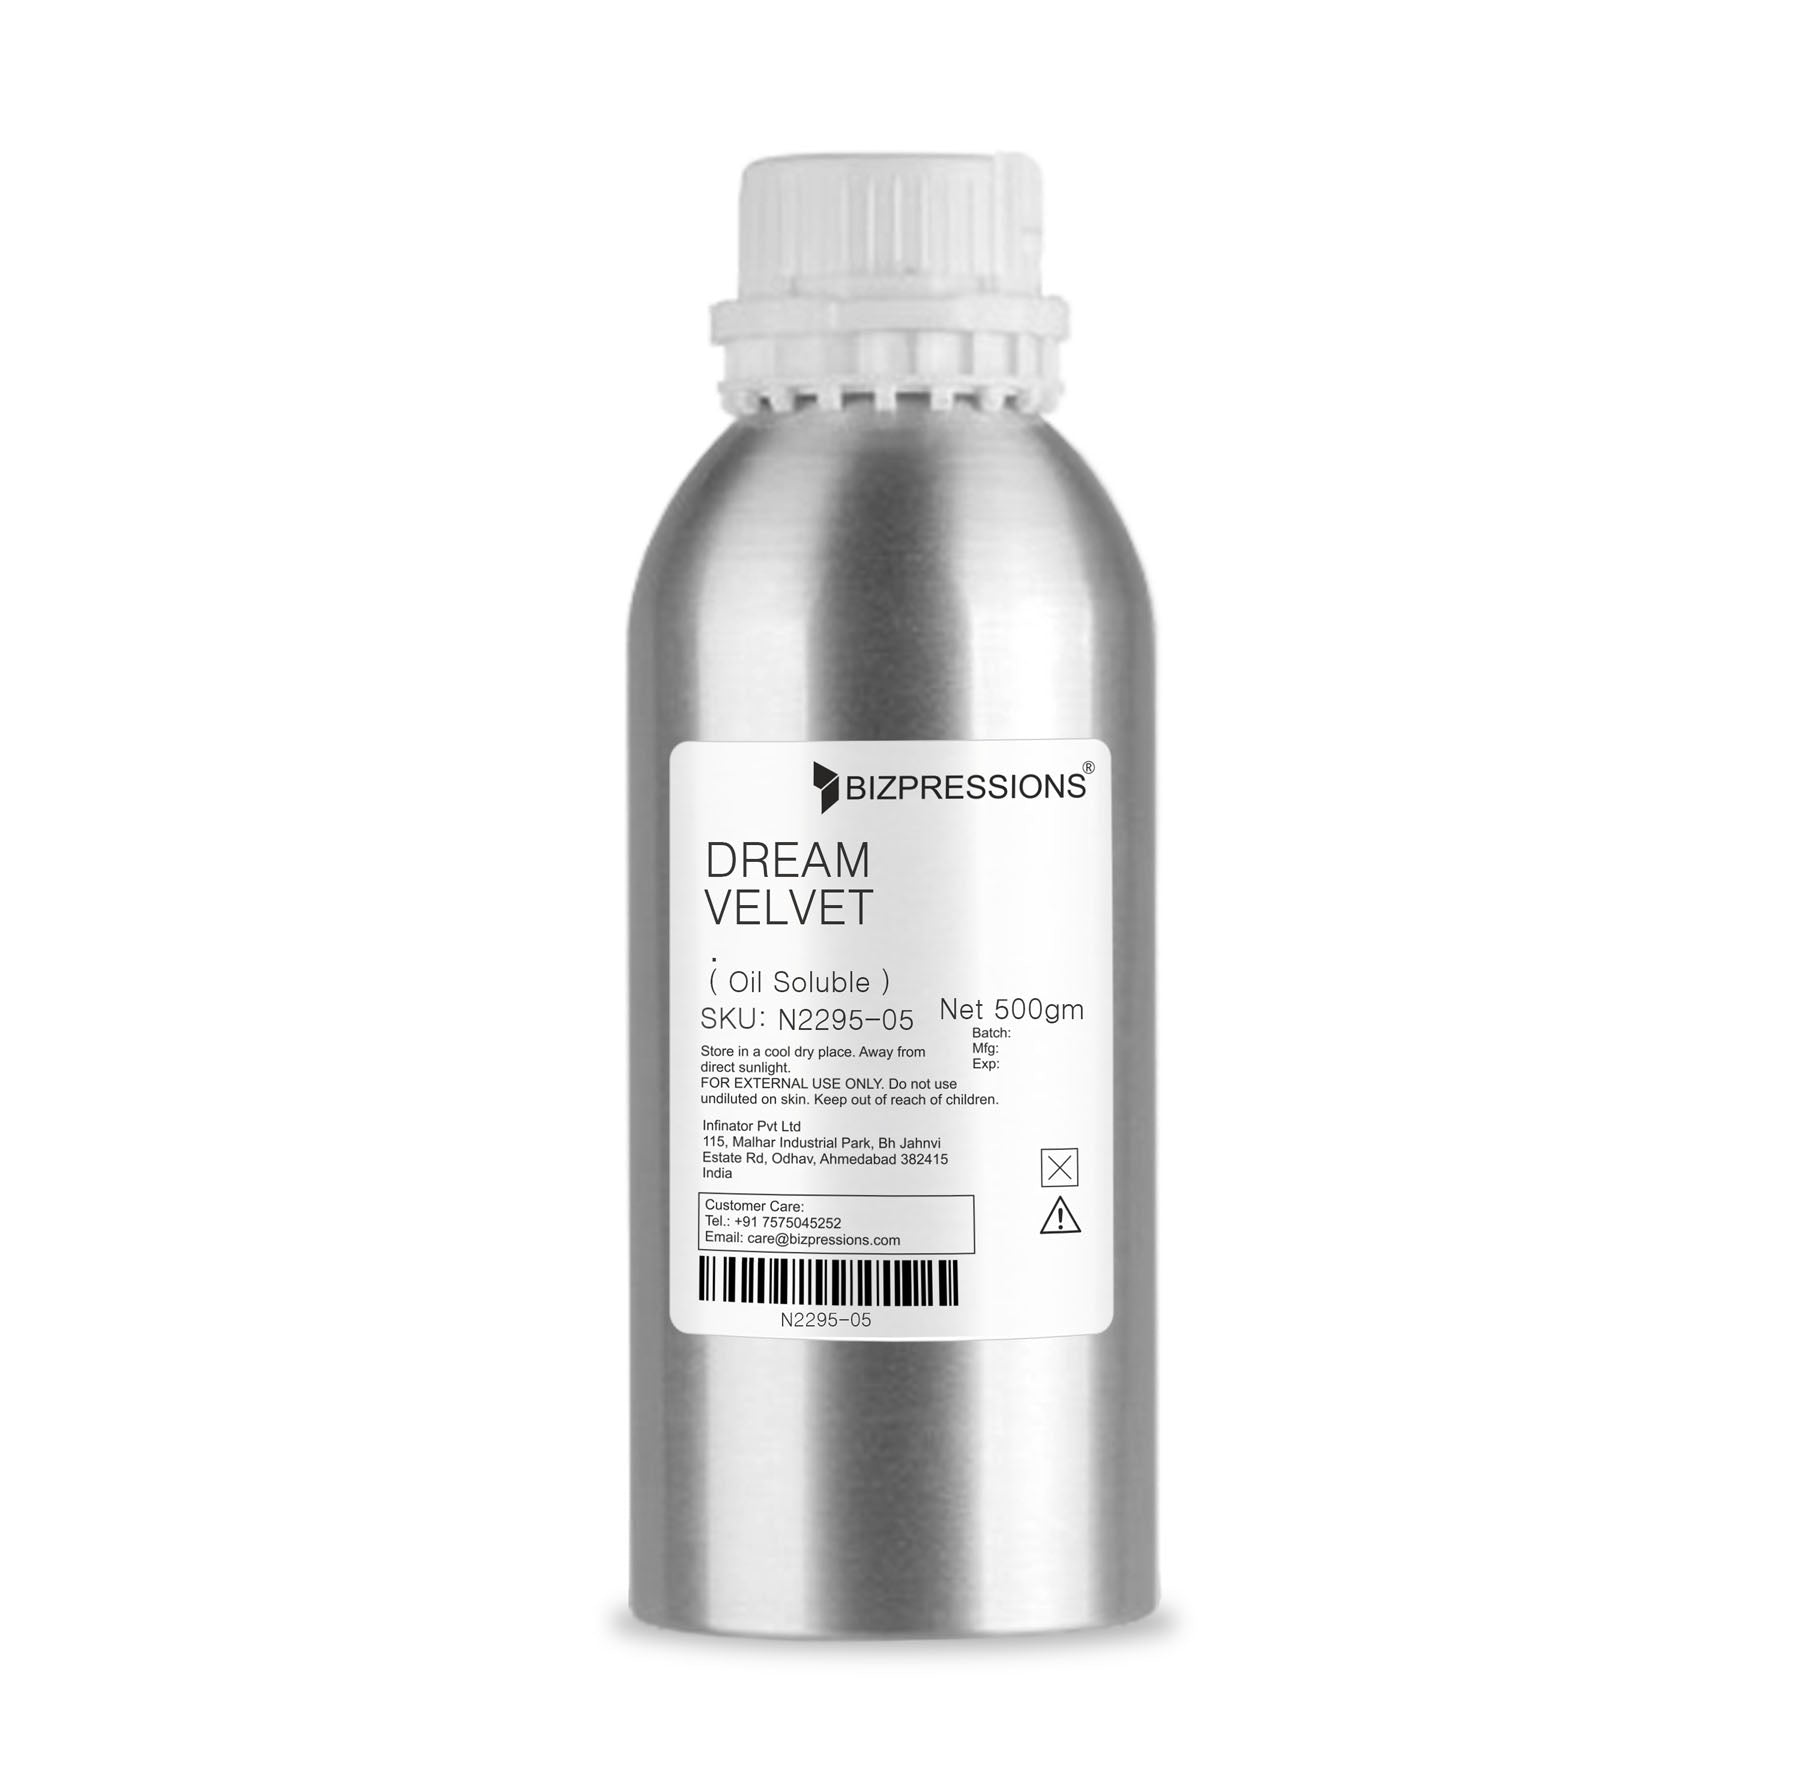 DREAM VELVET - Fragrance ( Oil Soluble ) - 500 gm